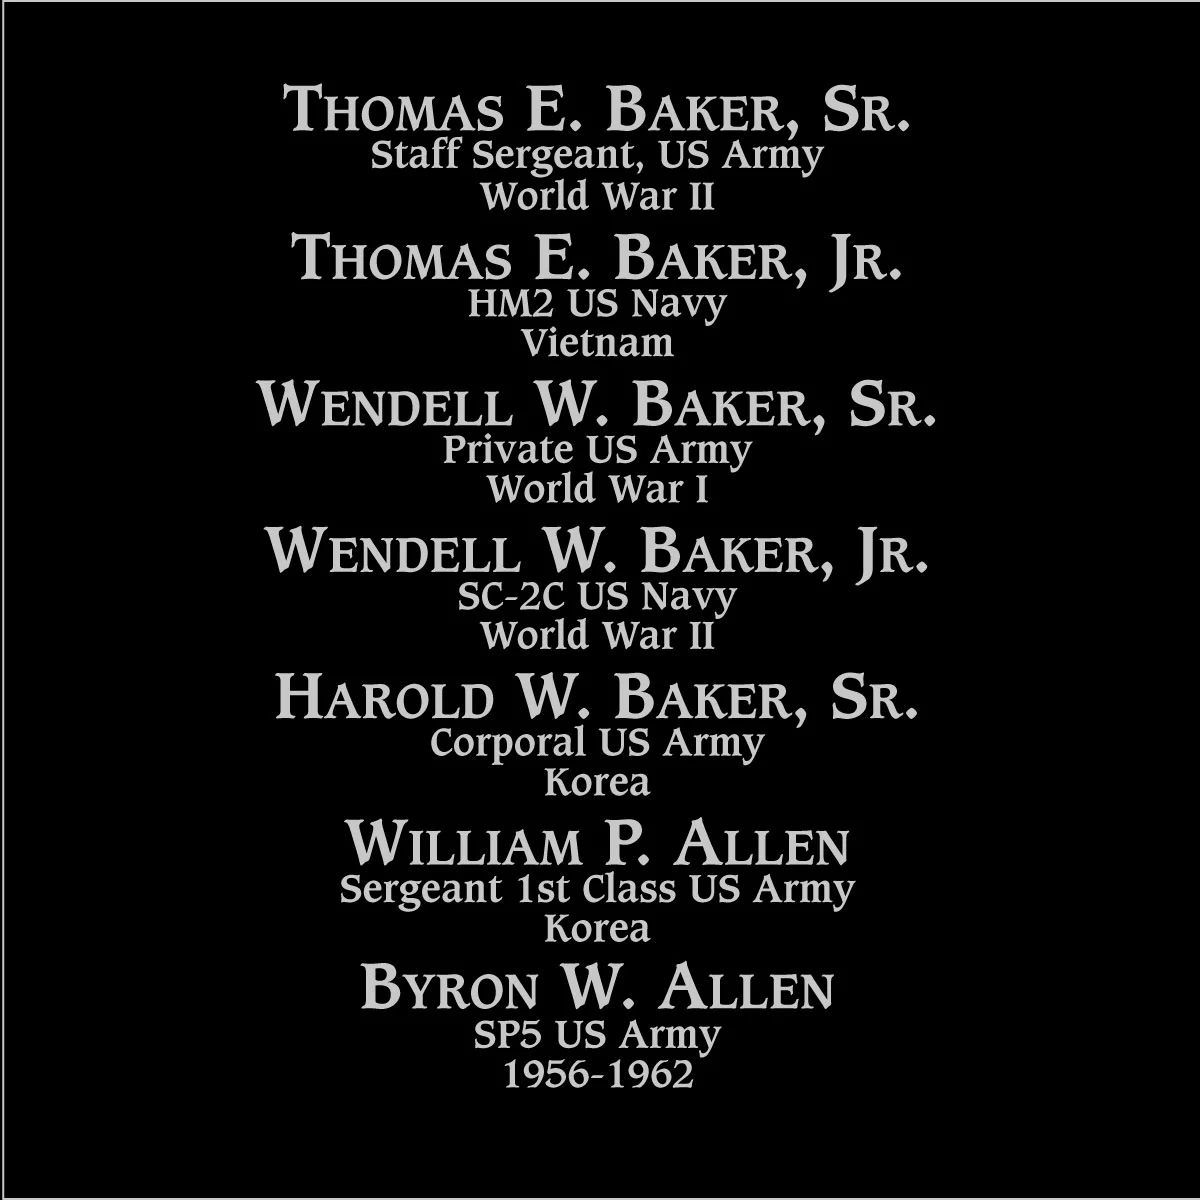 Wendell W. Baker jr